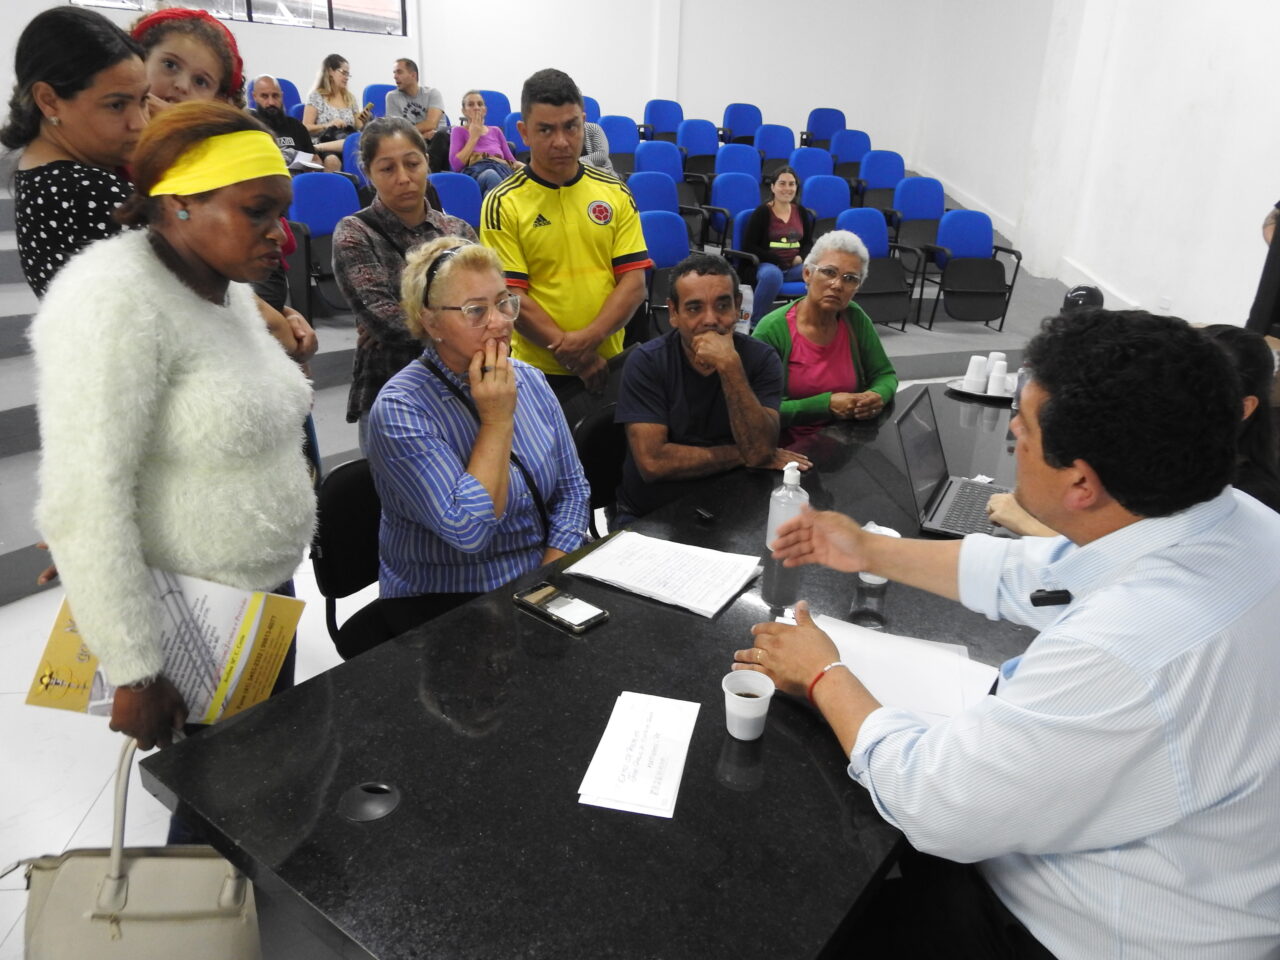 Gabinete do Povo: Prefeitura de Matinhos inova na resolução de demandas da população, transformando promessas em resultados